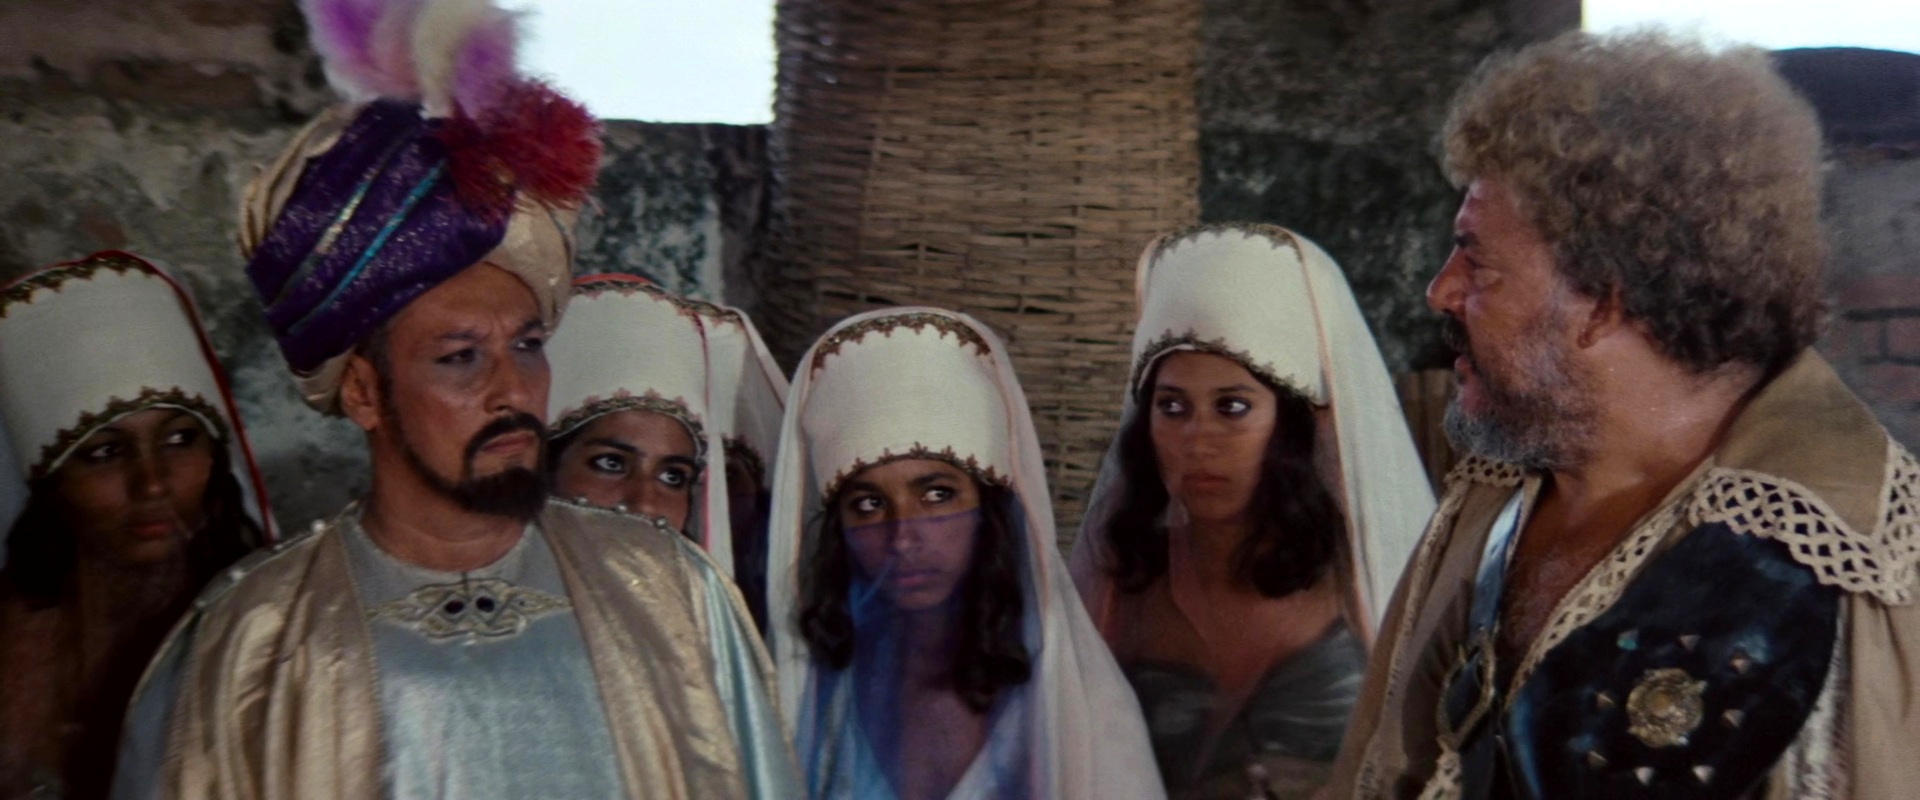 Il Corsaro Nero (1976) The emir and his concubines.jpg